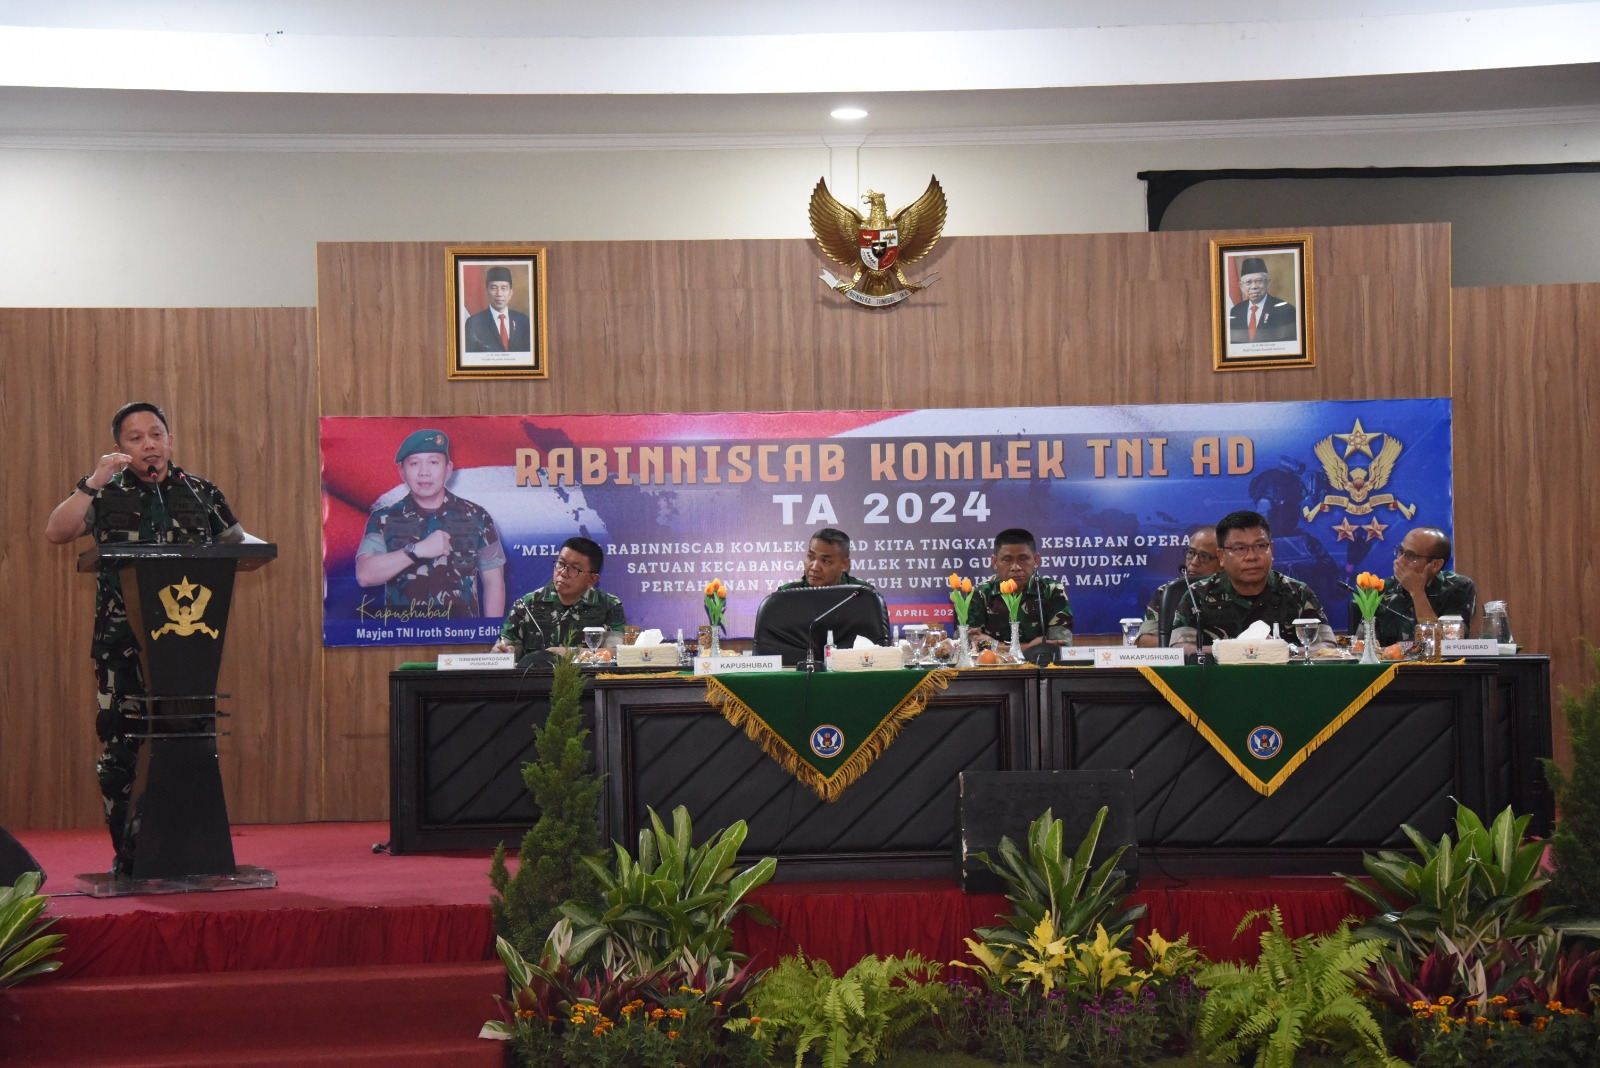 Rabinniscab Komlek TNI AD, Kapushubad : Lakukan Inovasi dan Kreatifitas Untuk Majukan Satuan dan Profesionalitas Prajurit